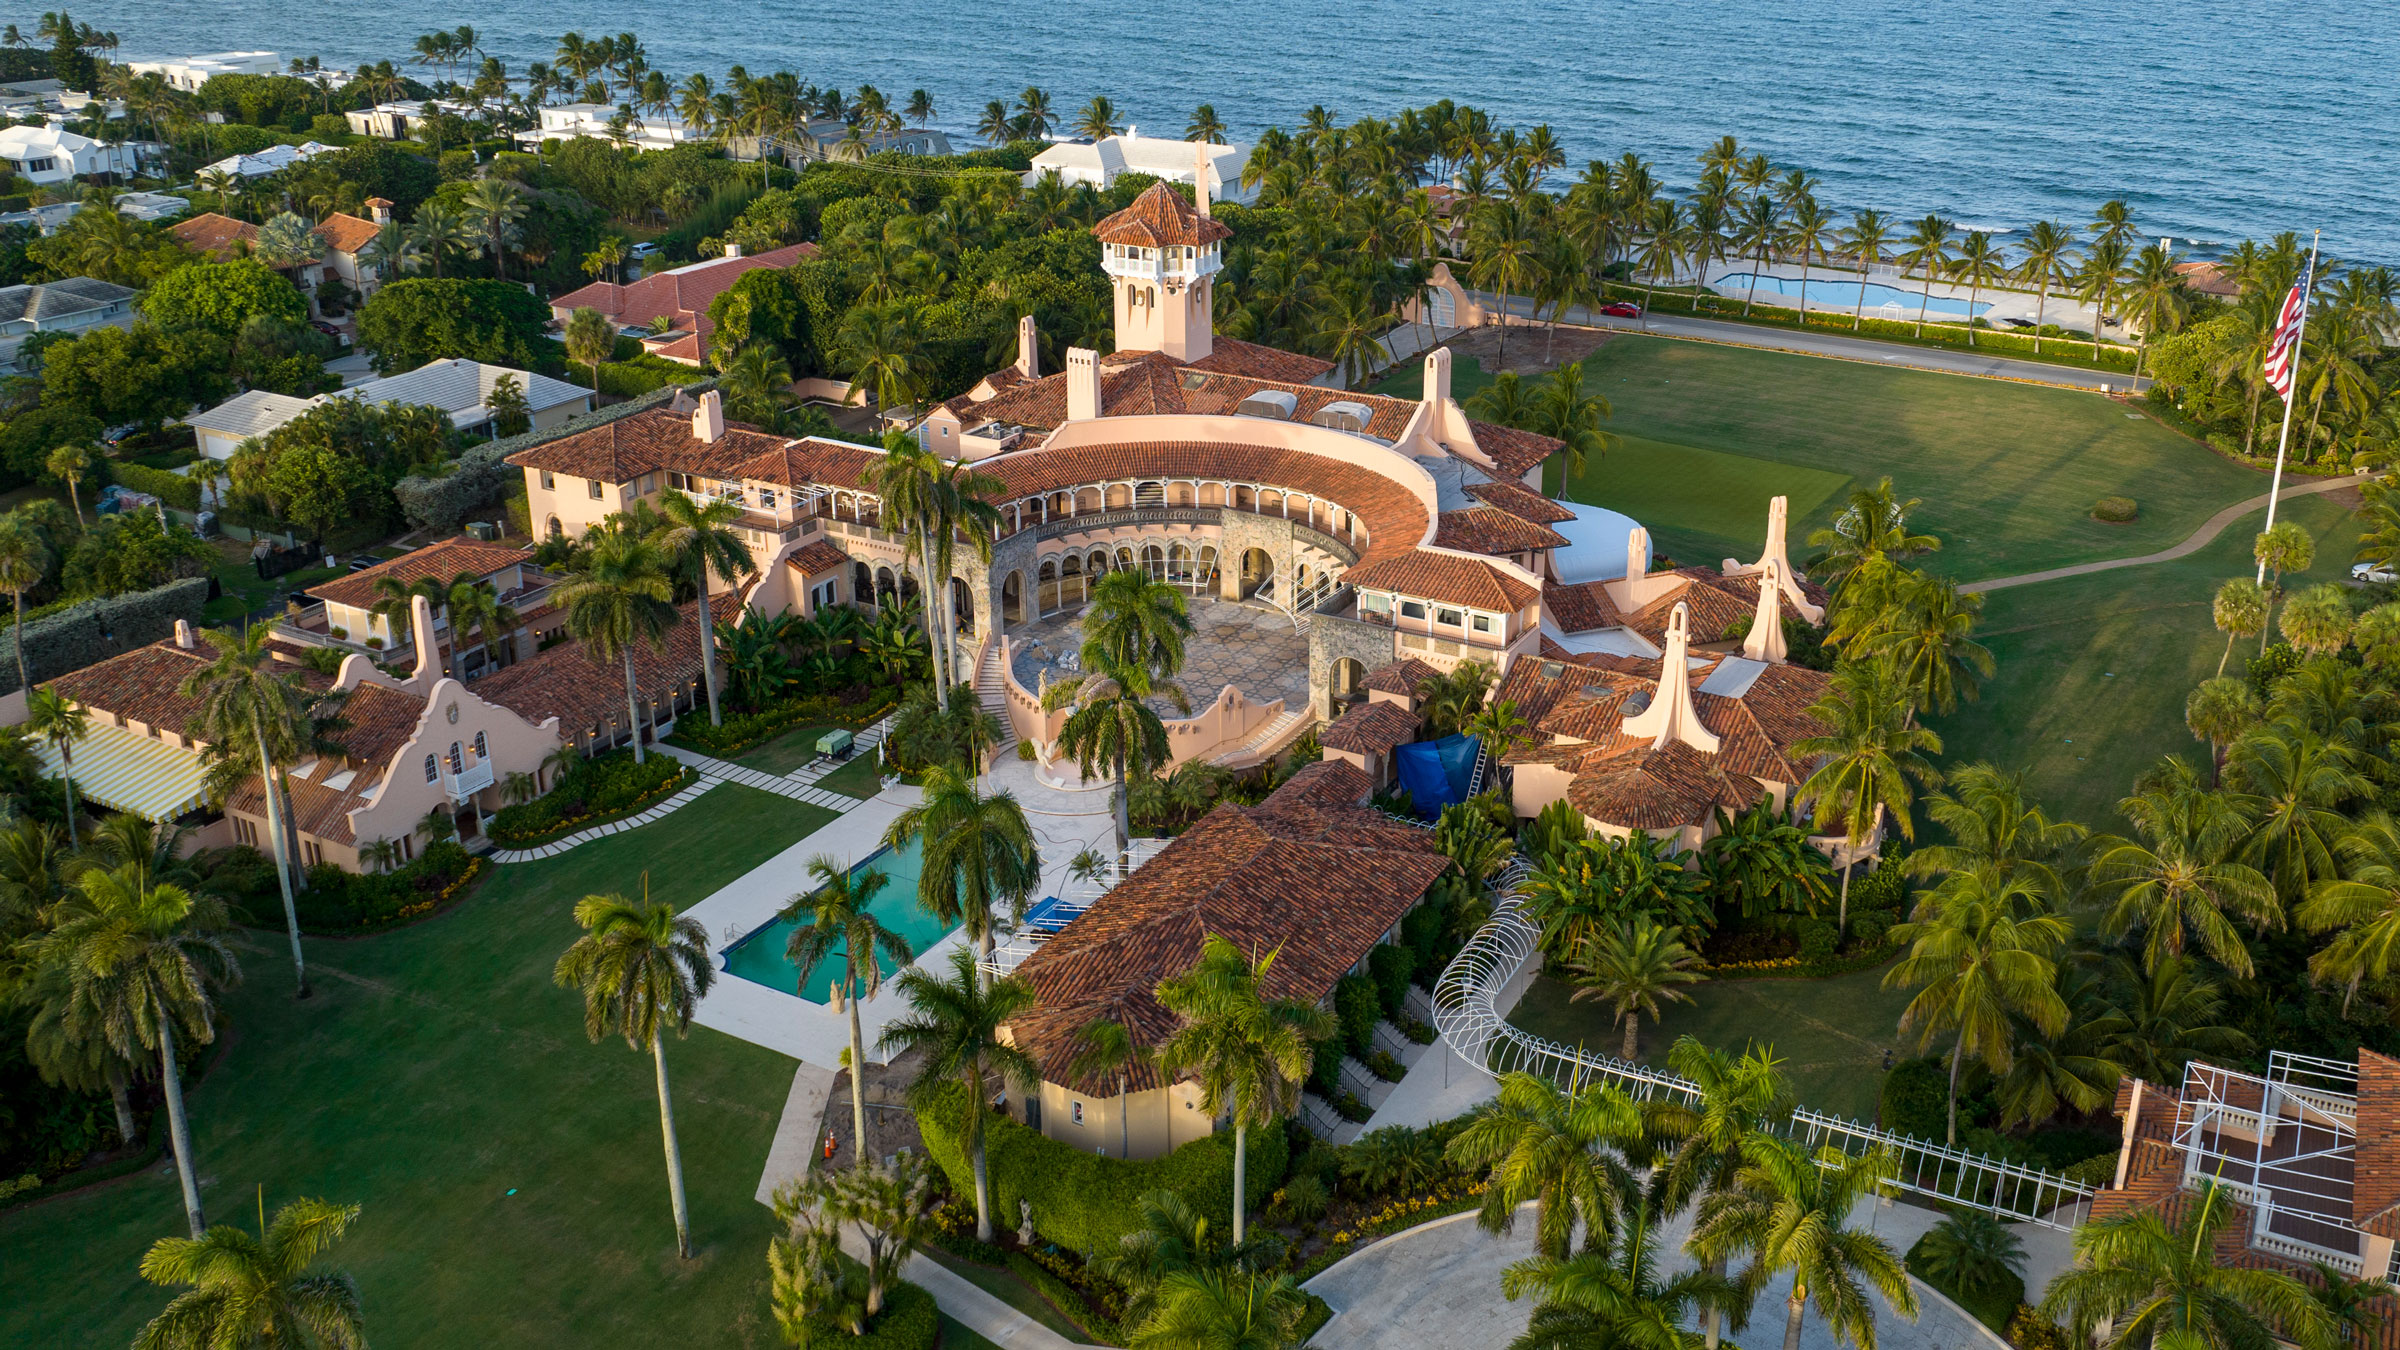 An aerial view of Trump's Mar-a-Lago estate in Palm Beach, Florida.